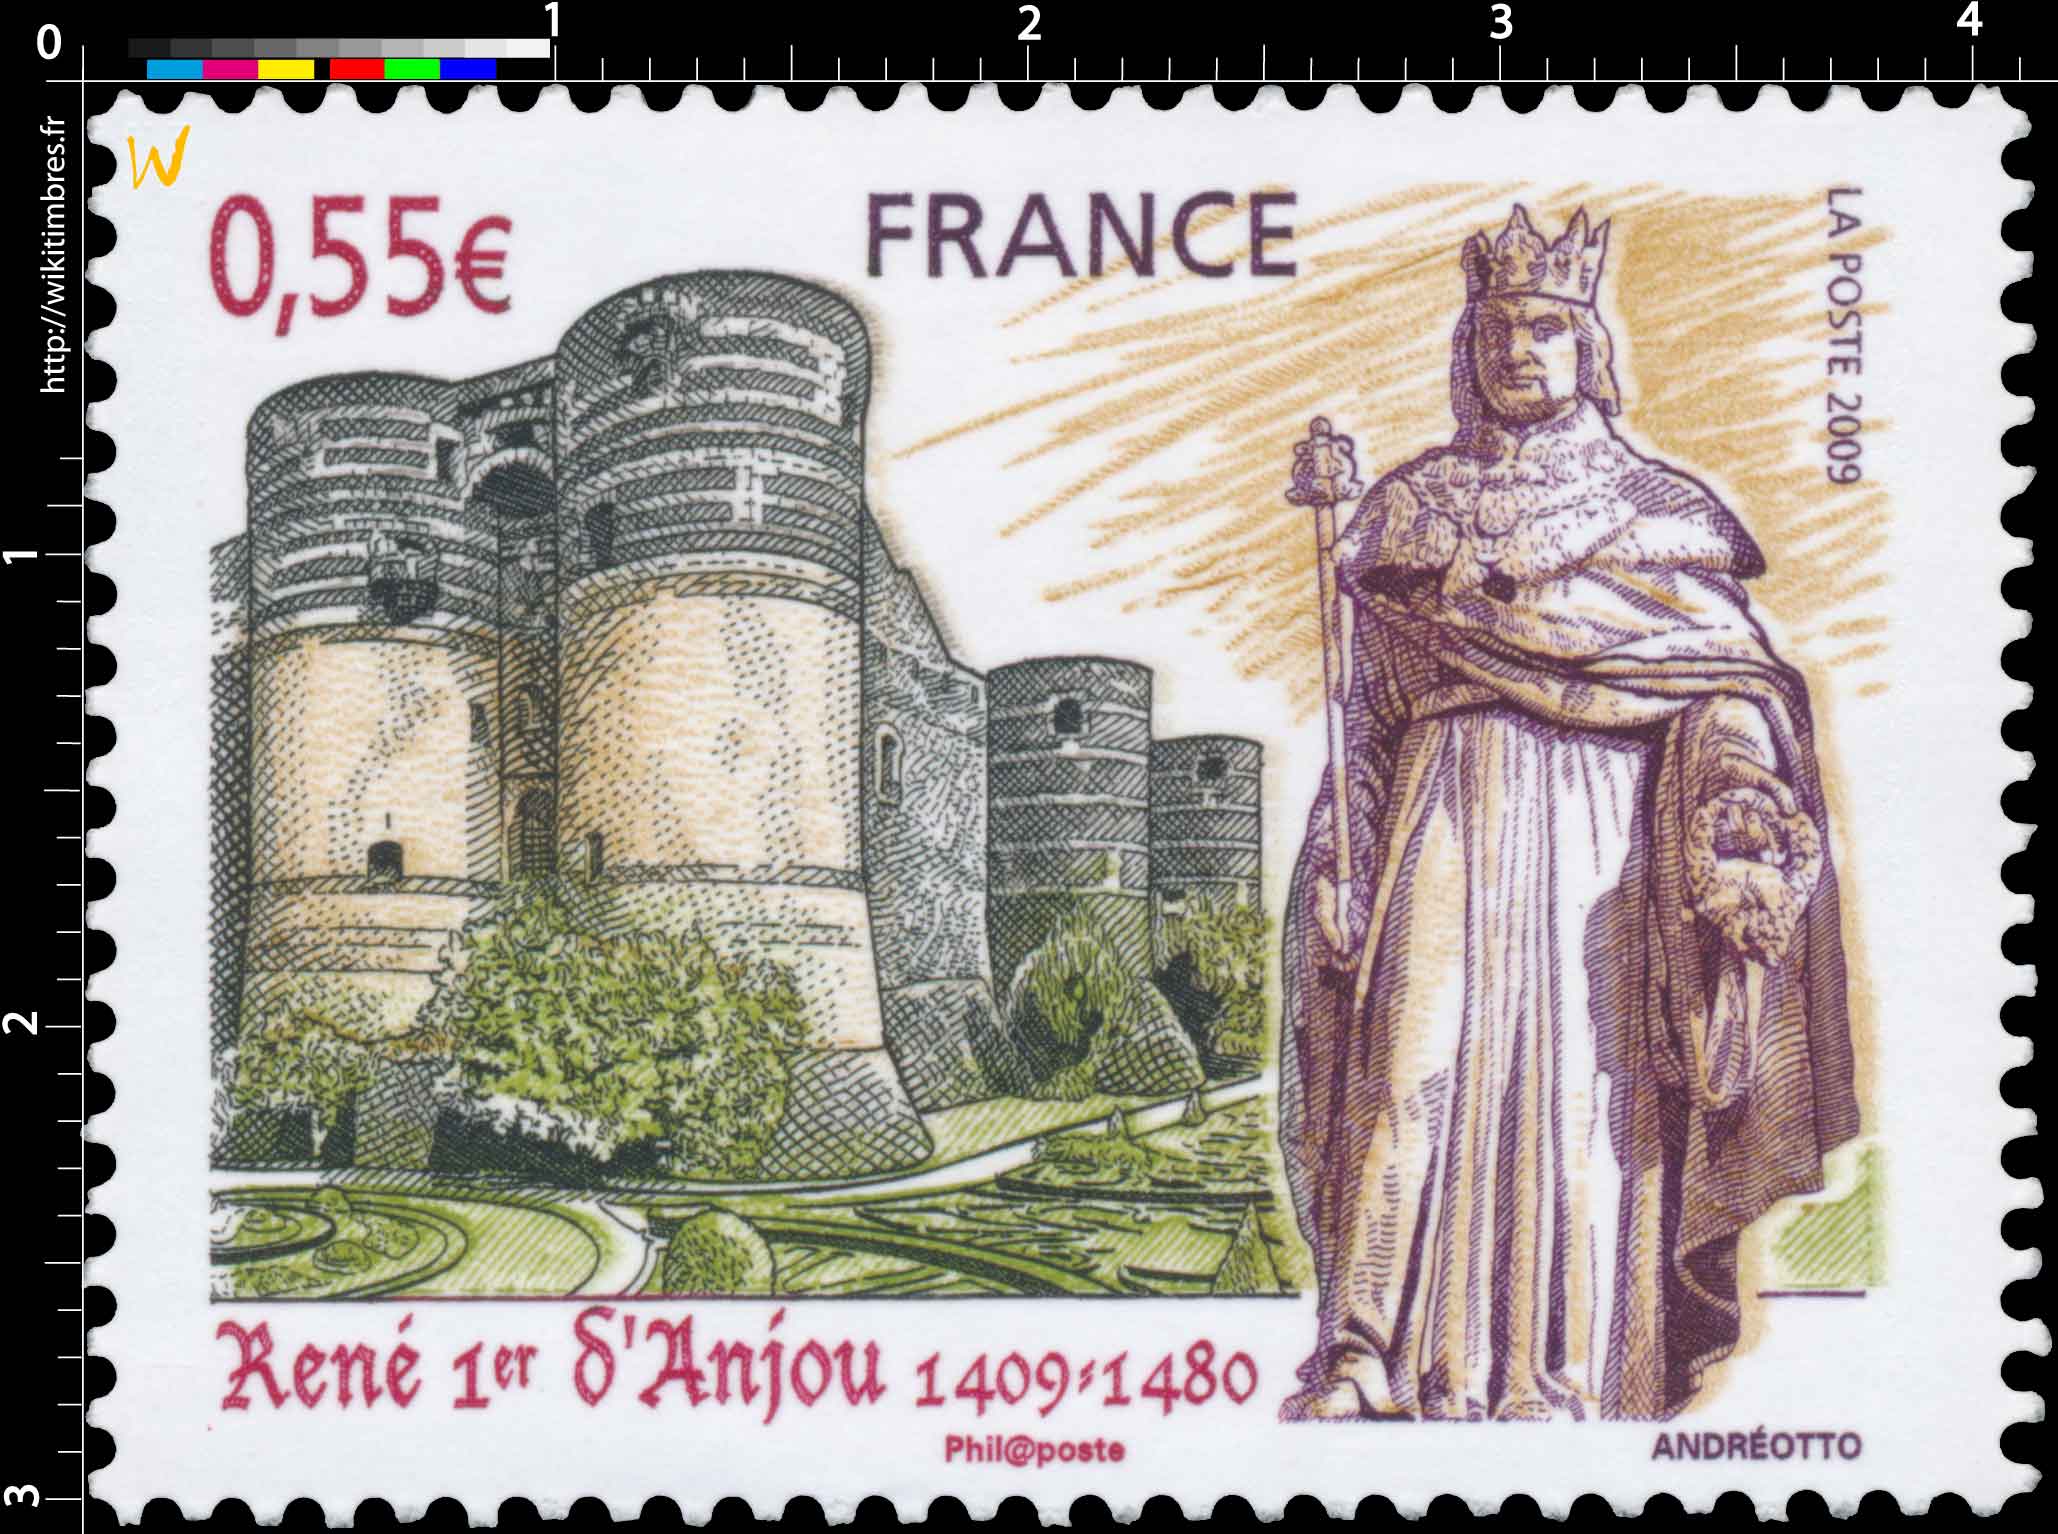 2009 René Ier d’Anjou 1409-1480